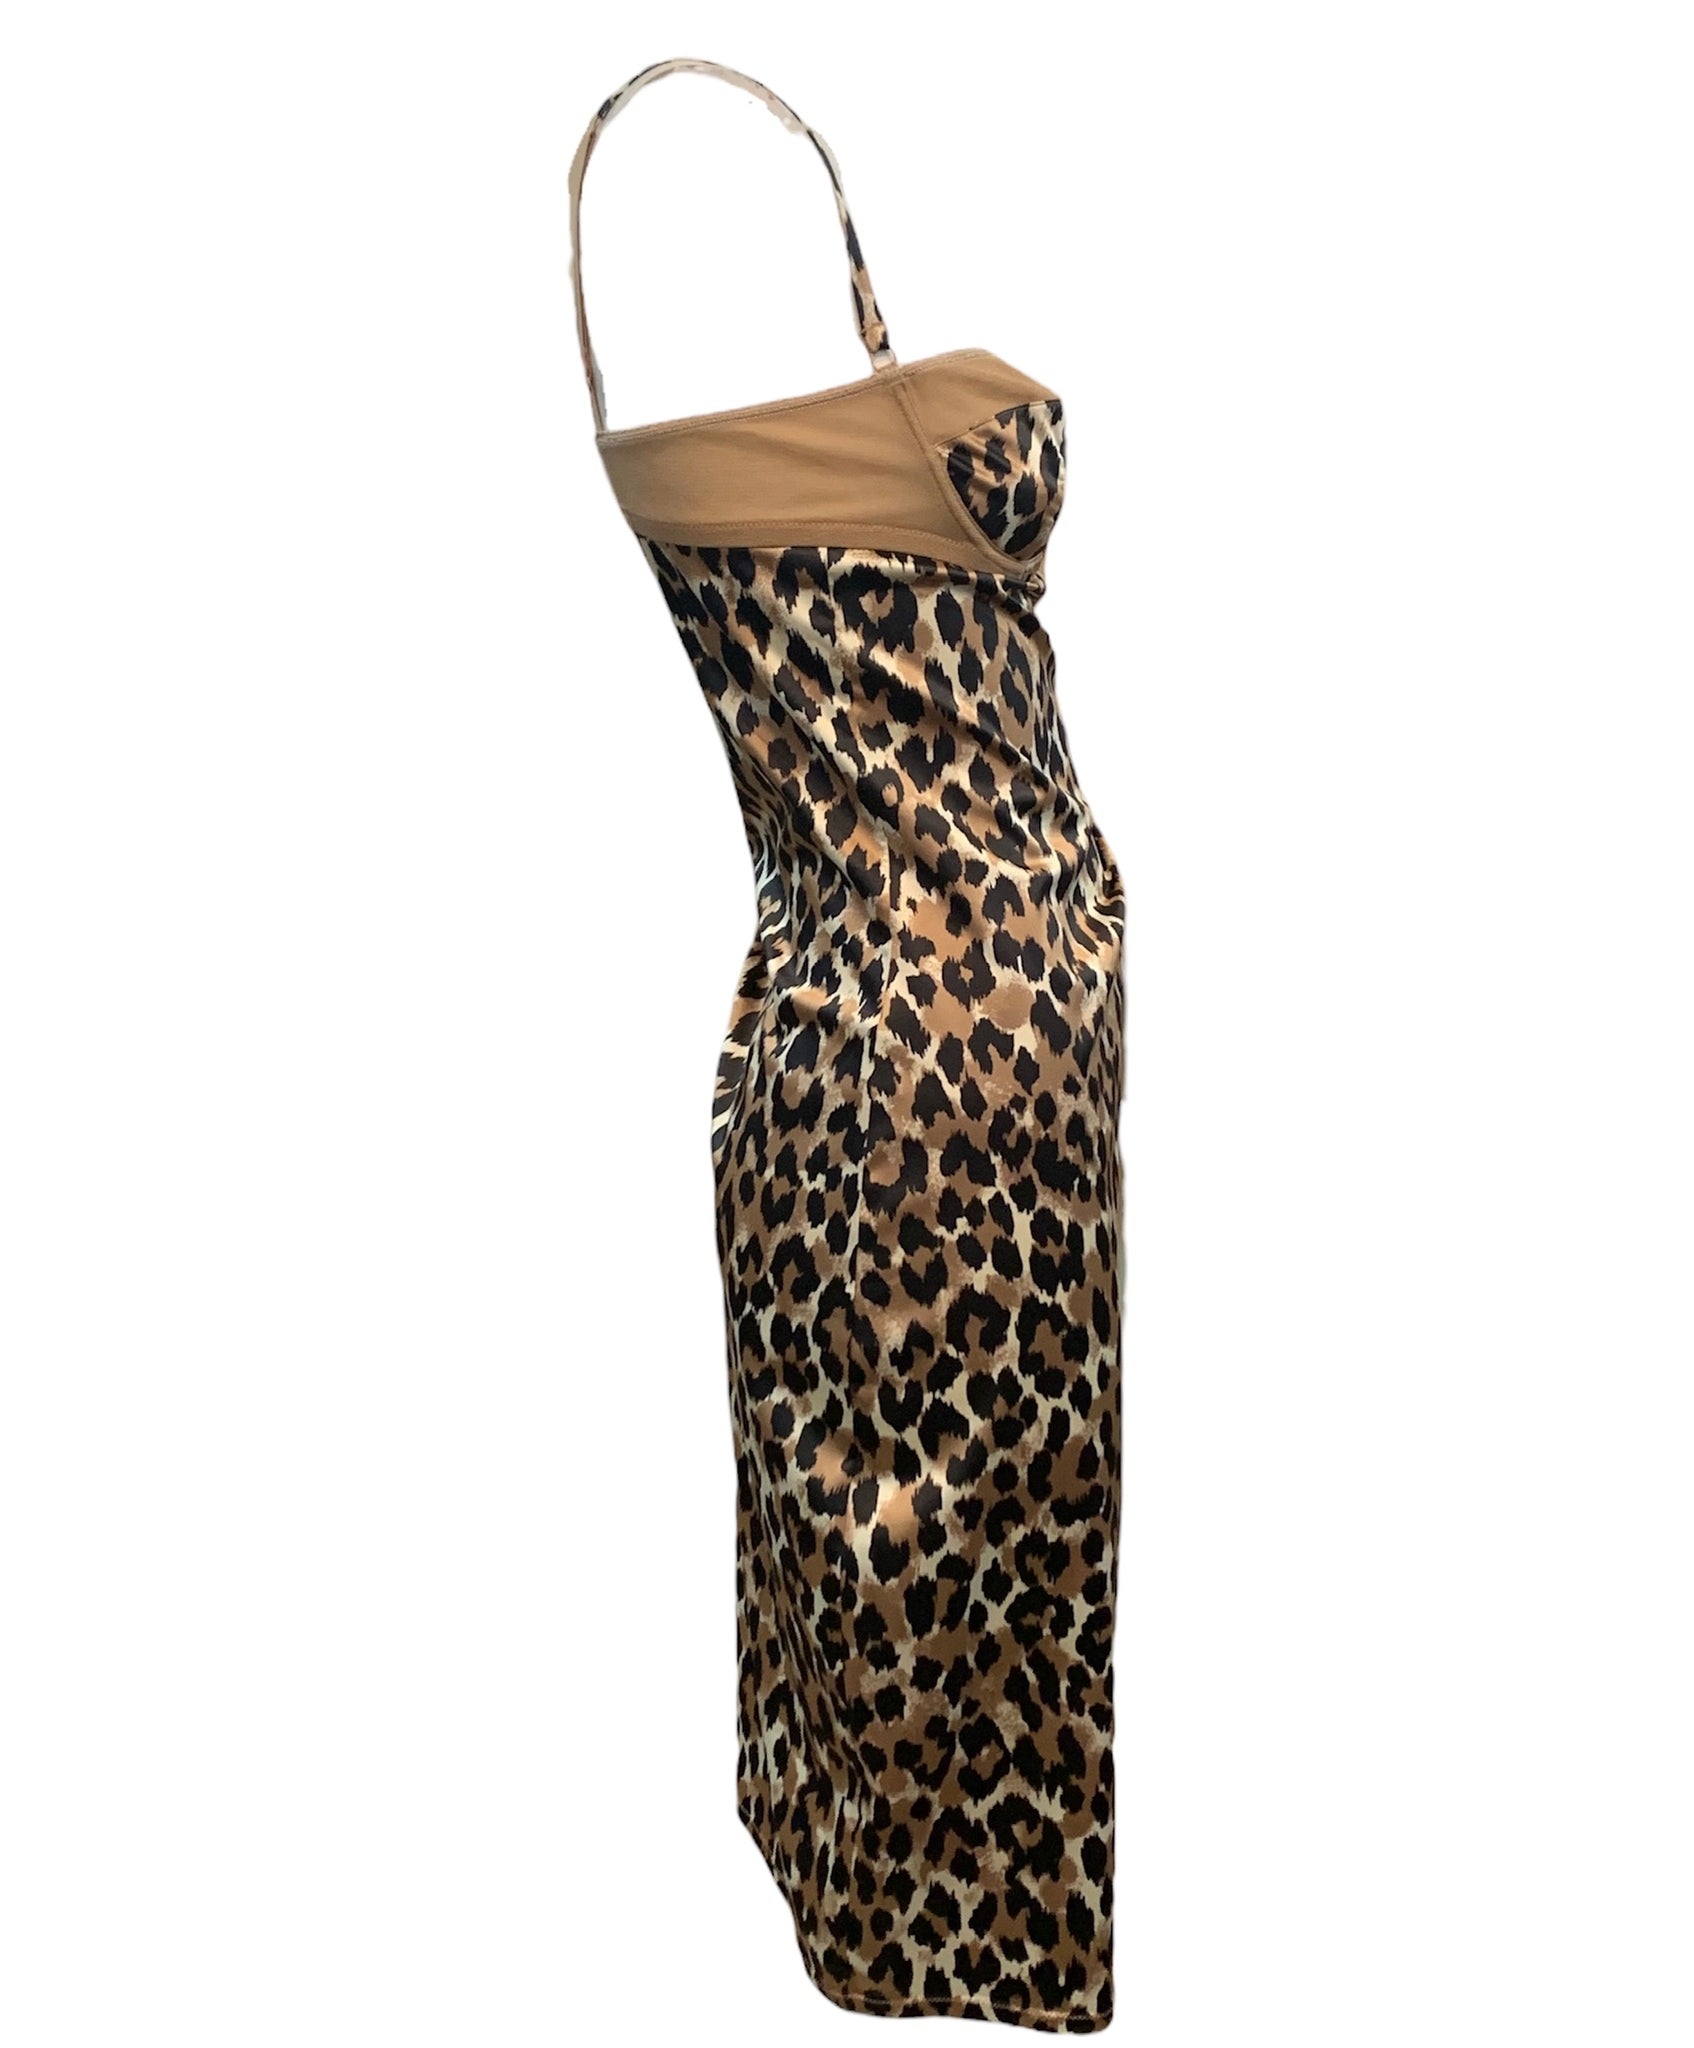 Dolce & Gabbana Y2K Leopard Print Bra Top Slip Dress SIDE 2 of 6